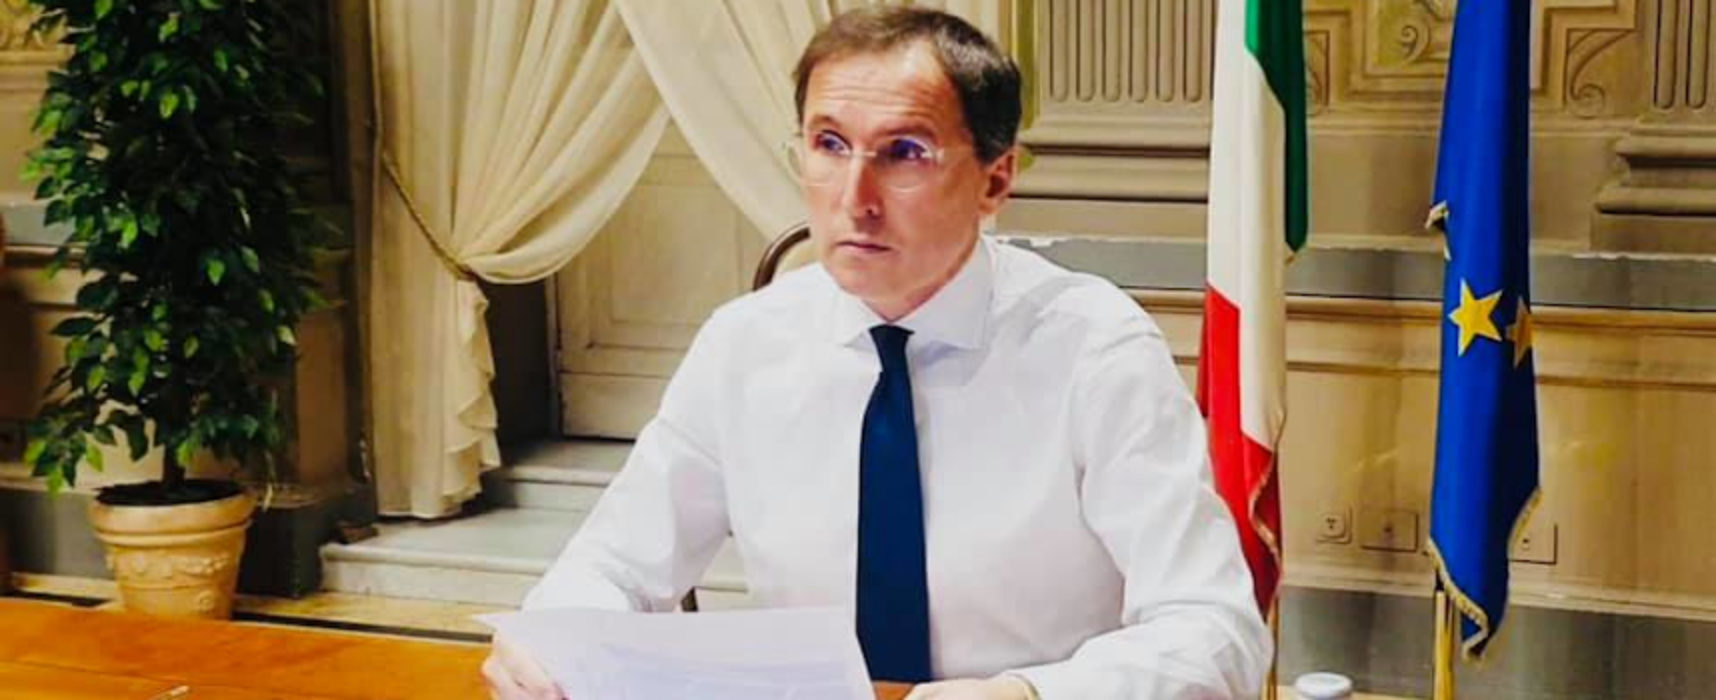 Rincari, Francesco Boccia: “Opportuno valutare una moratoria dei mutui”